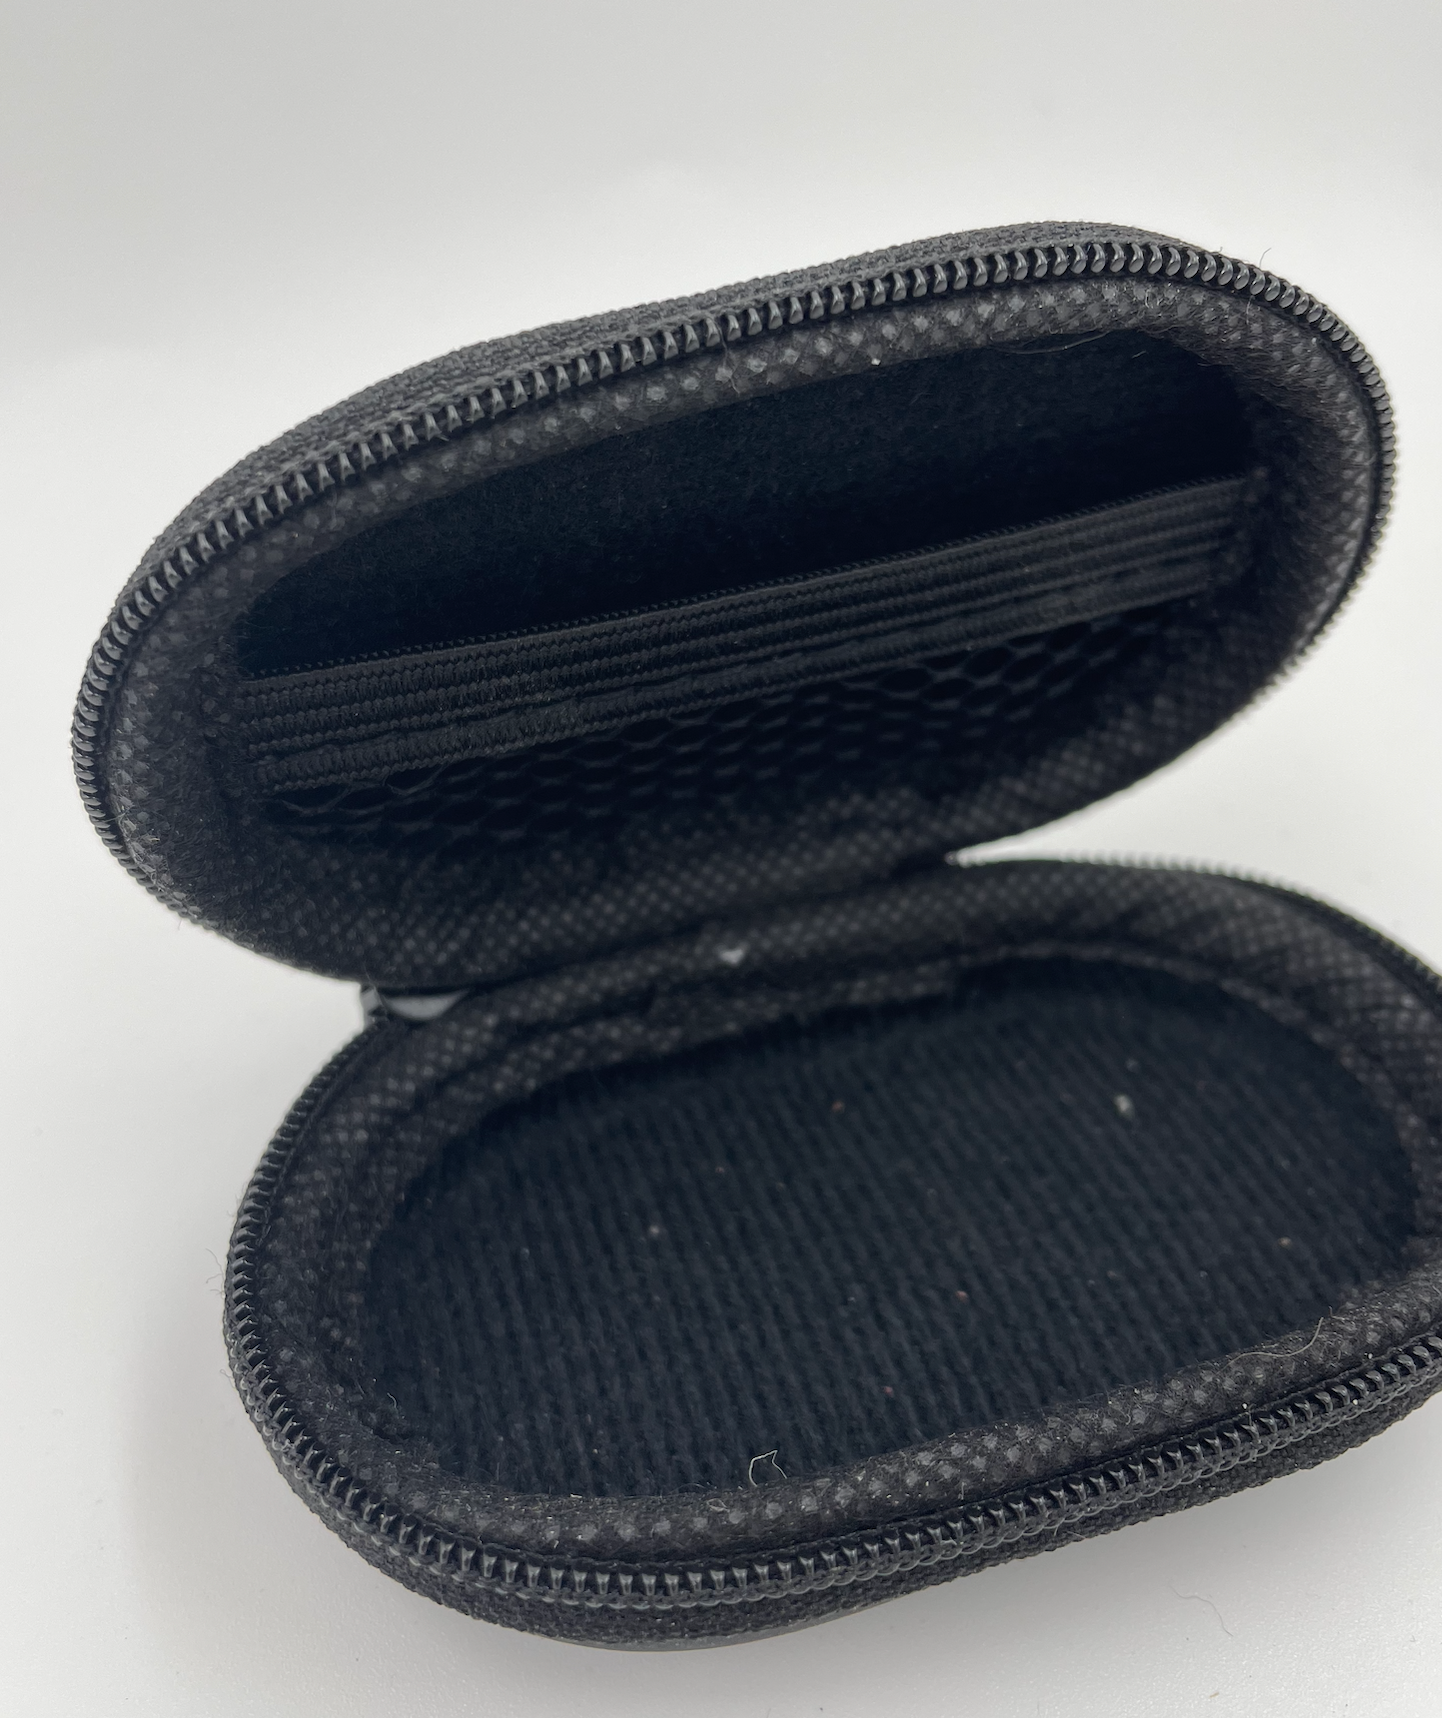 Fixim storage case / case for in-ear earphones - Black